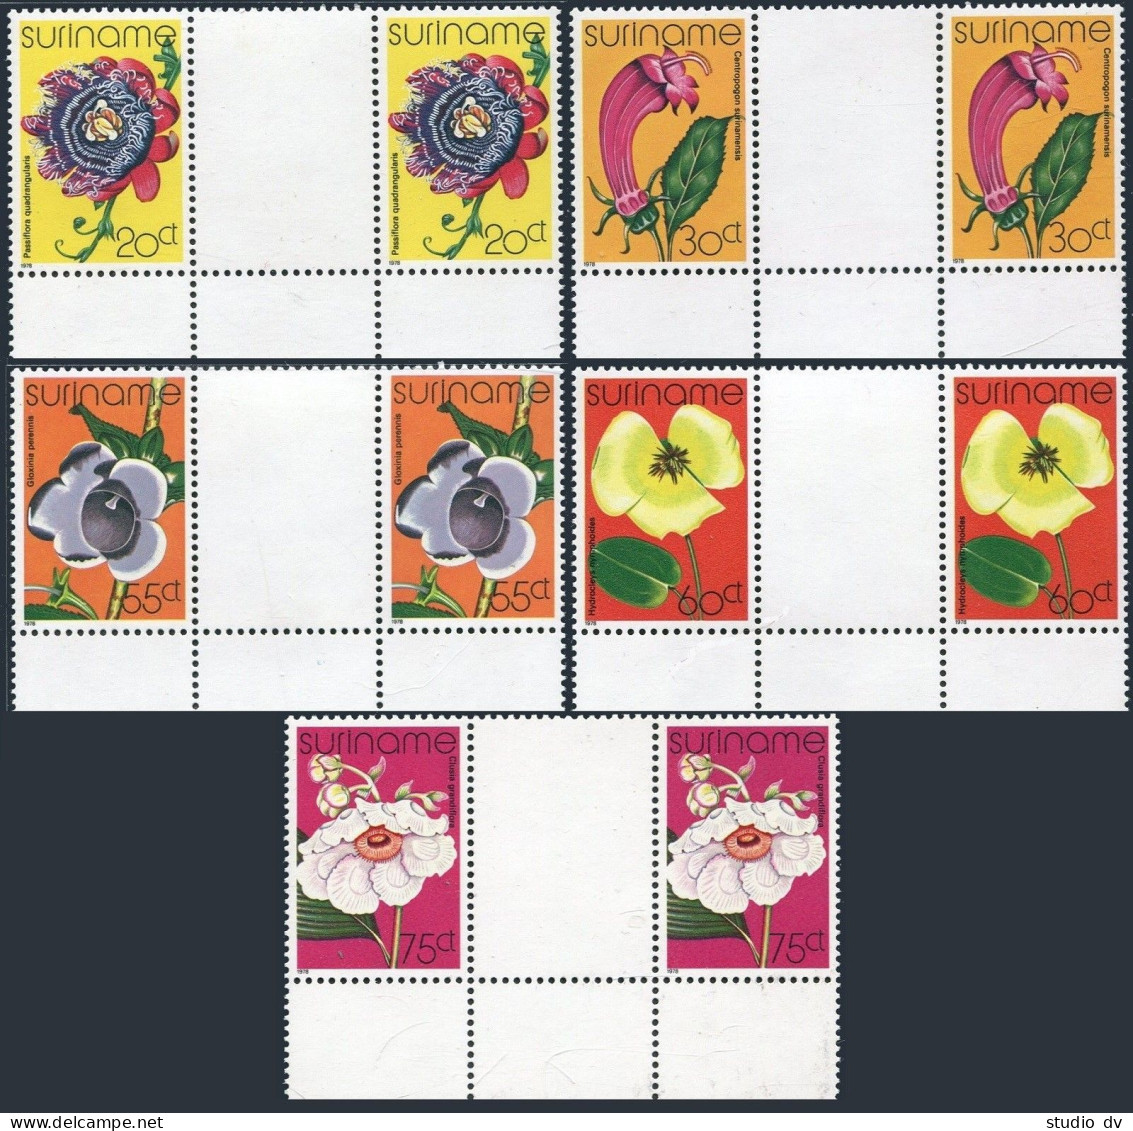 Surinam 484-488 Gutter,MNH.Michel 807-811. Flowers,1978. - Surinam